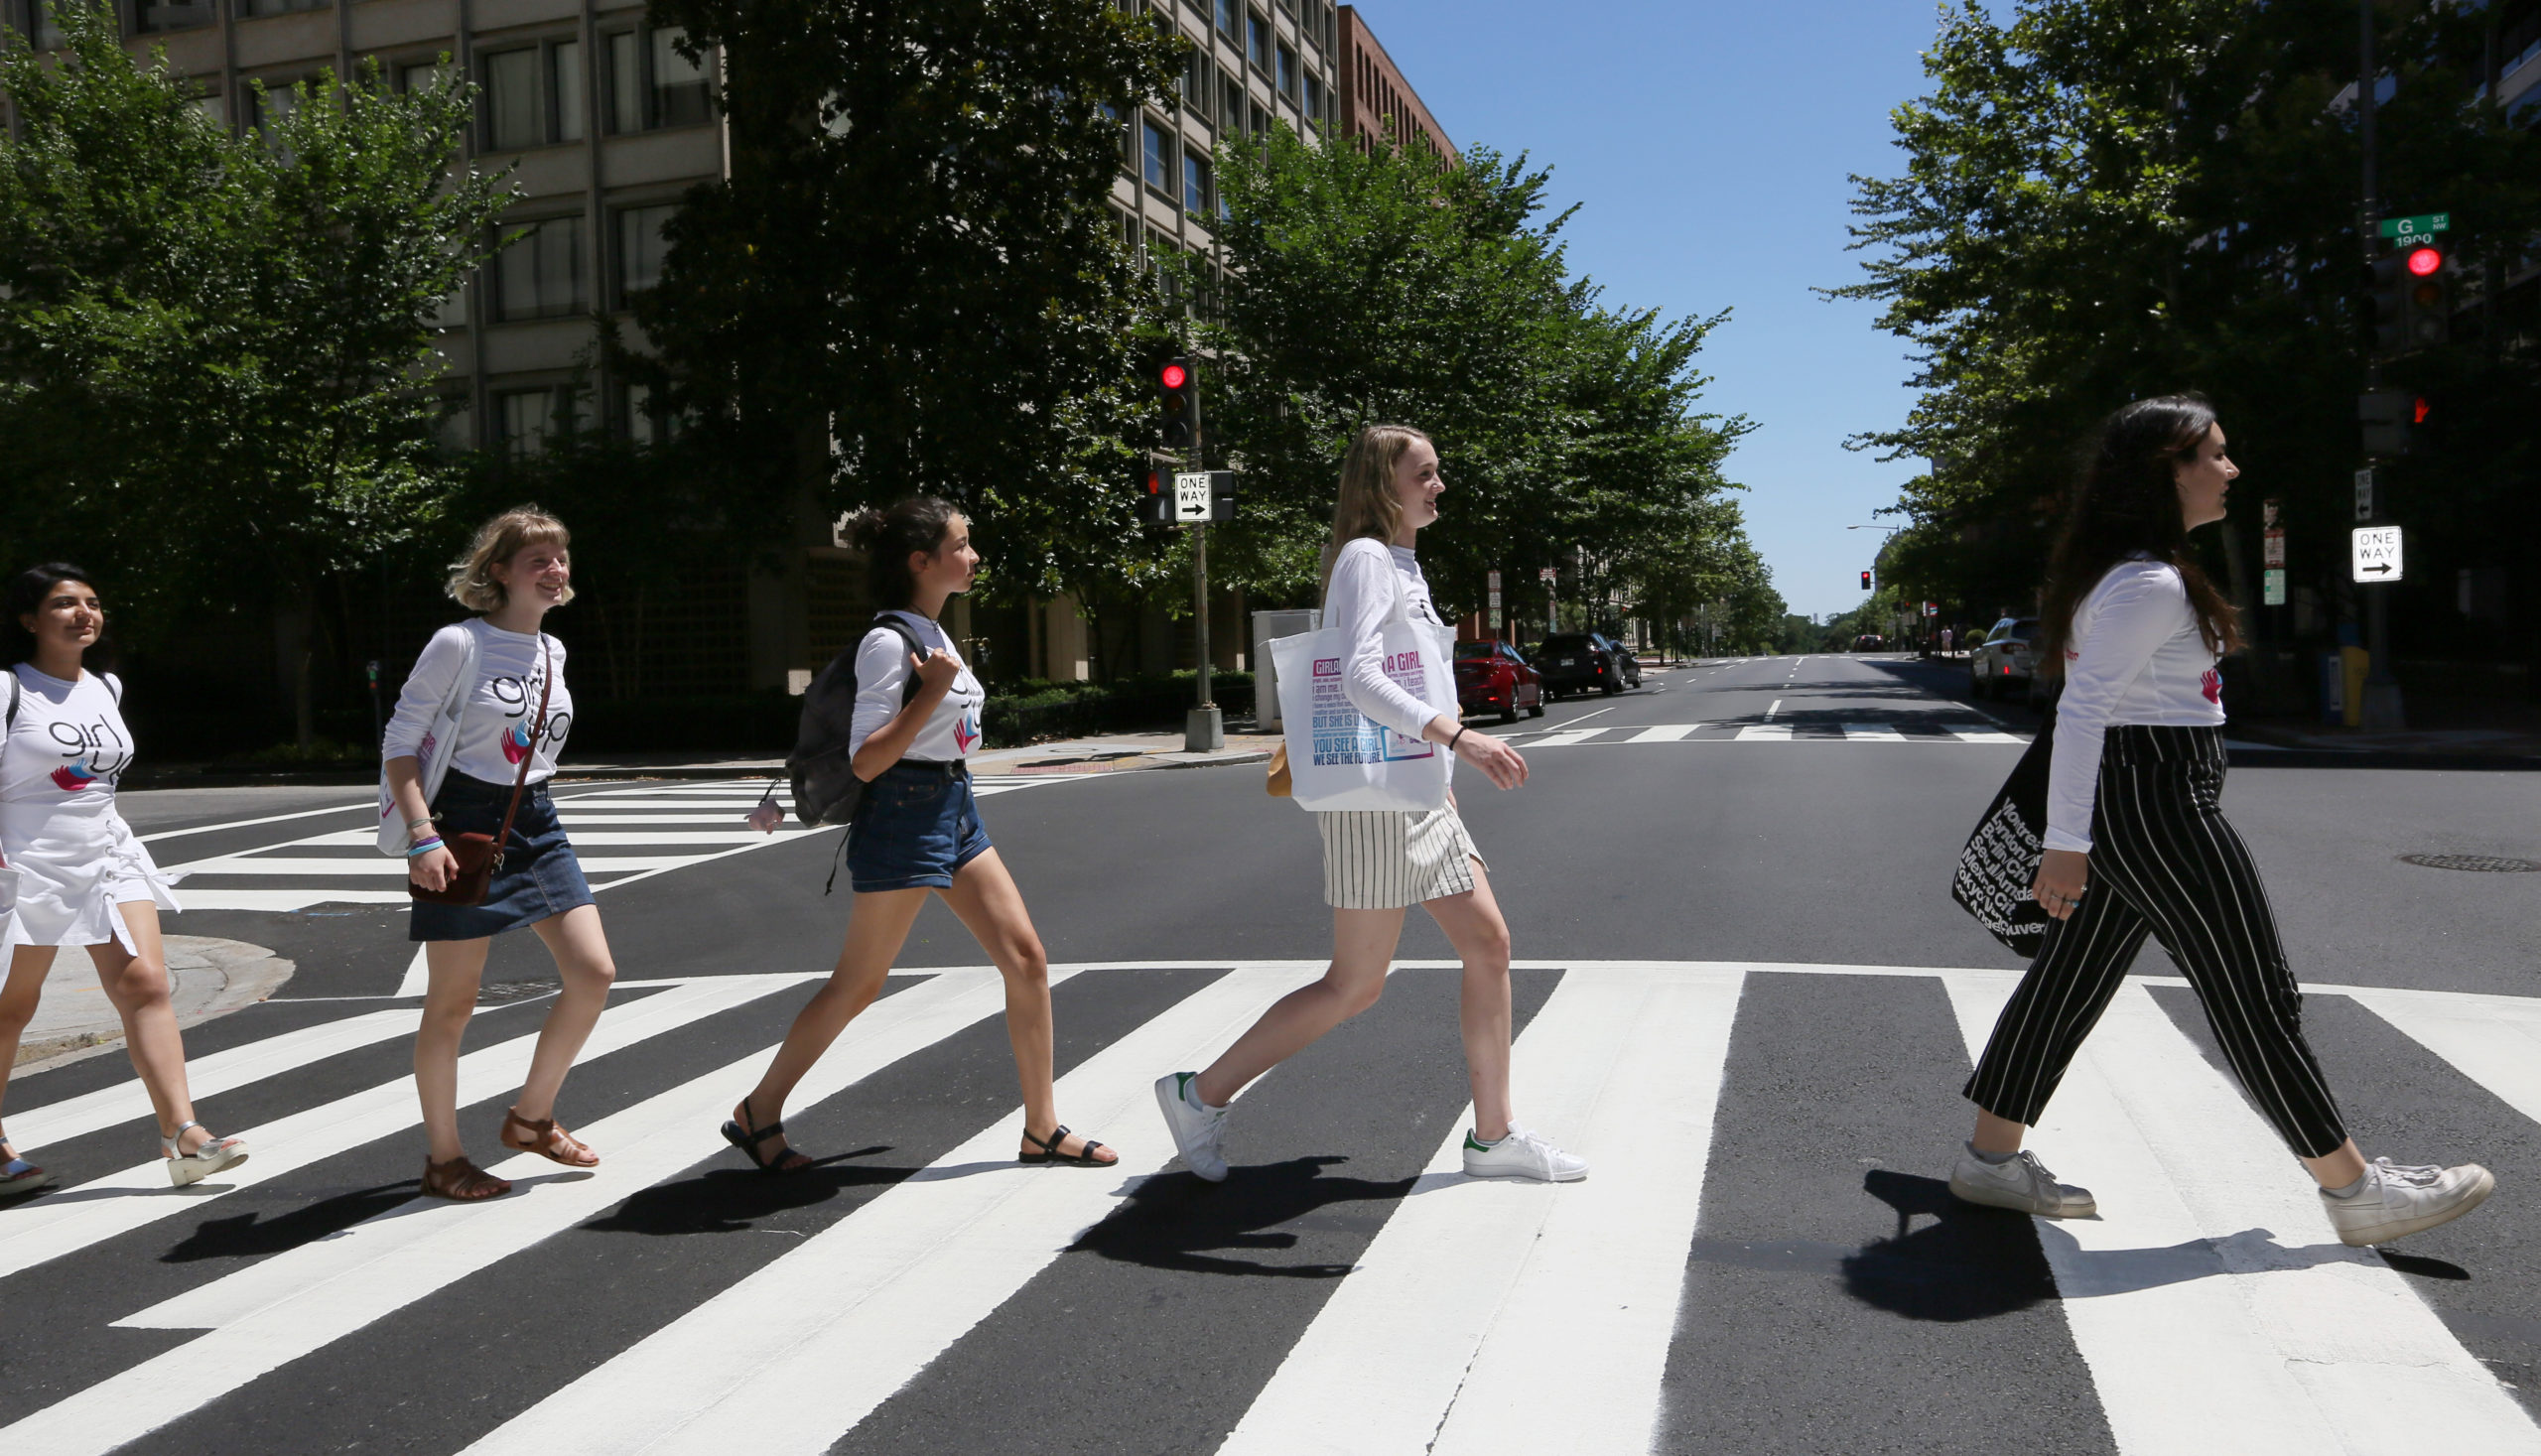 5 meninas atravessam a rua uma após a outra de frente com a camisa do seu conselheiro adolescente